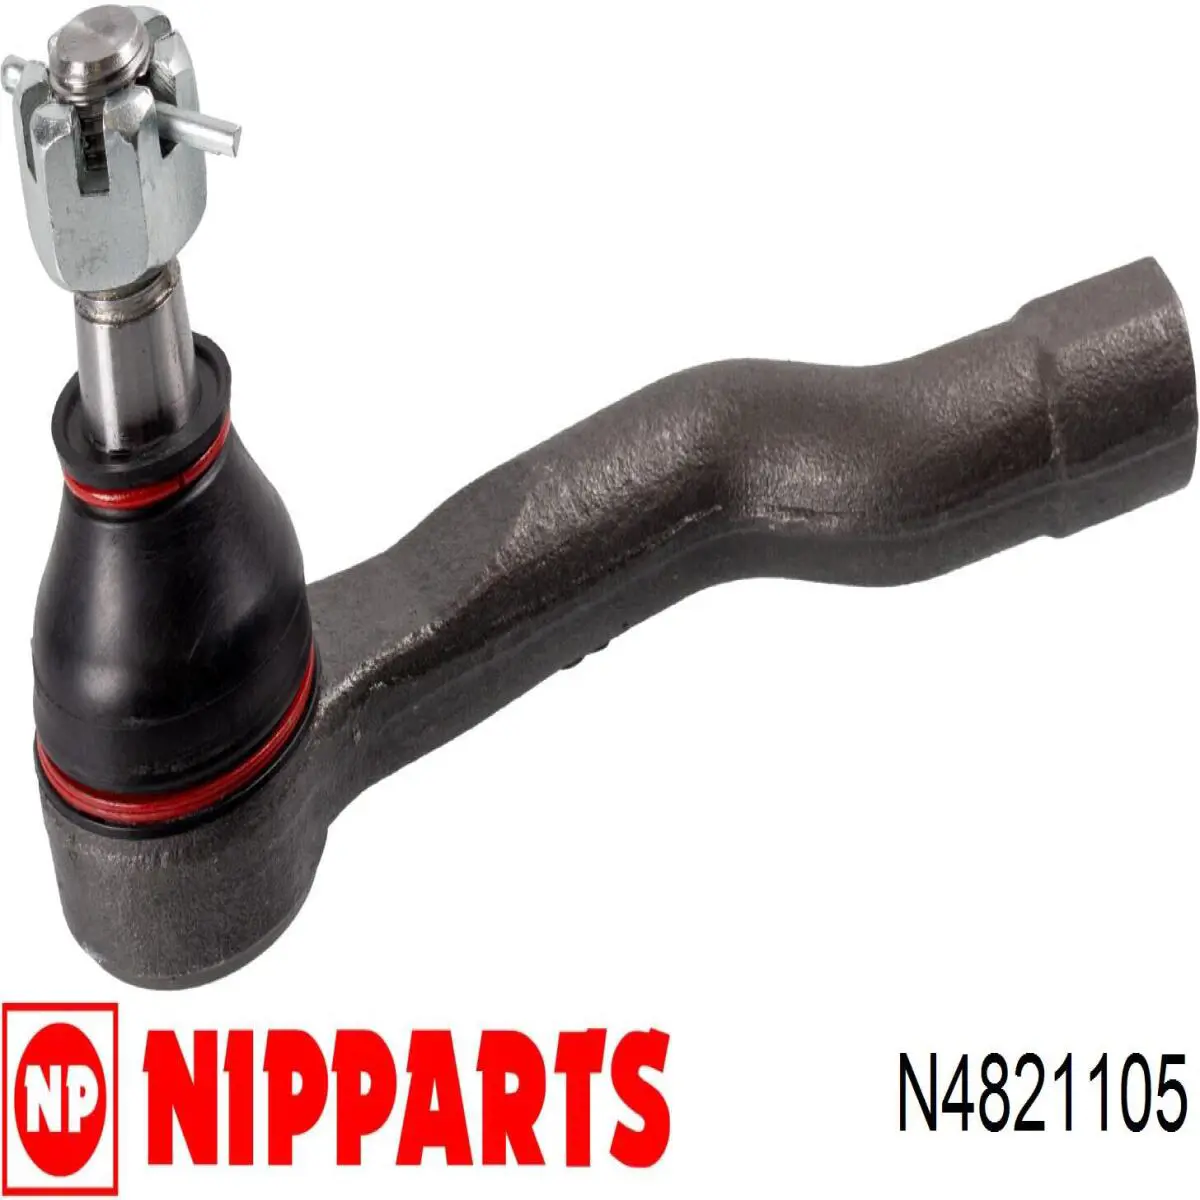 Rótula barra de acoplamiento exterior N4821105 Nipparts